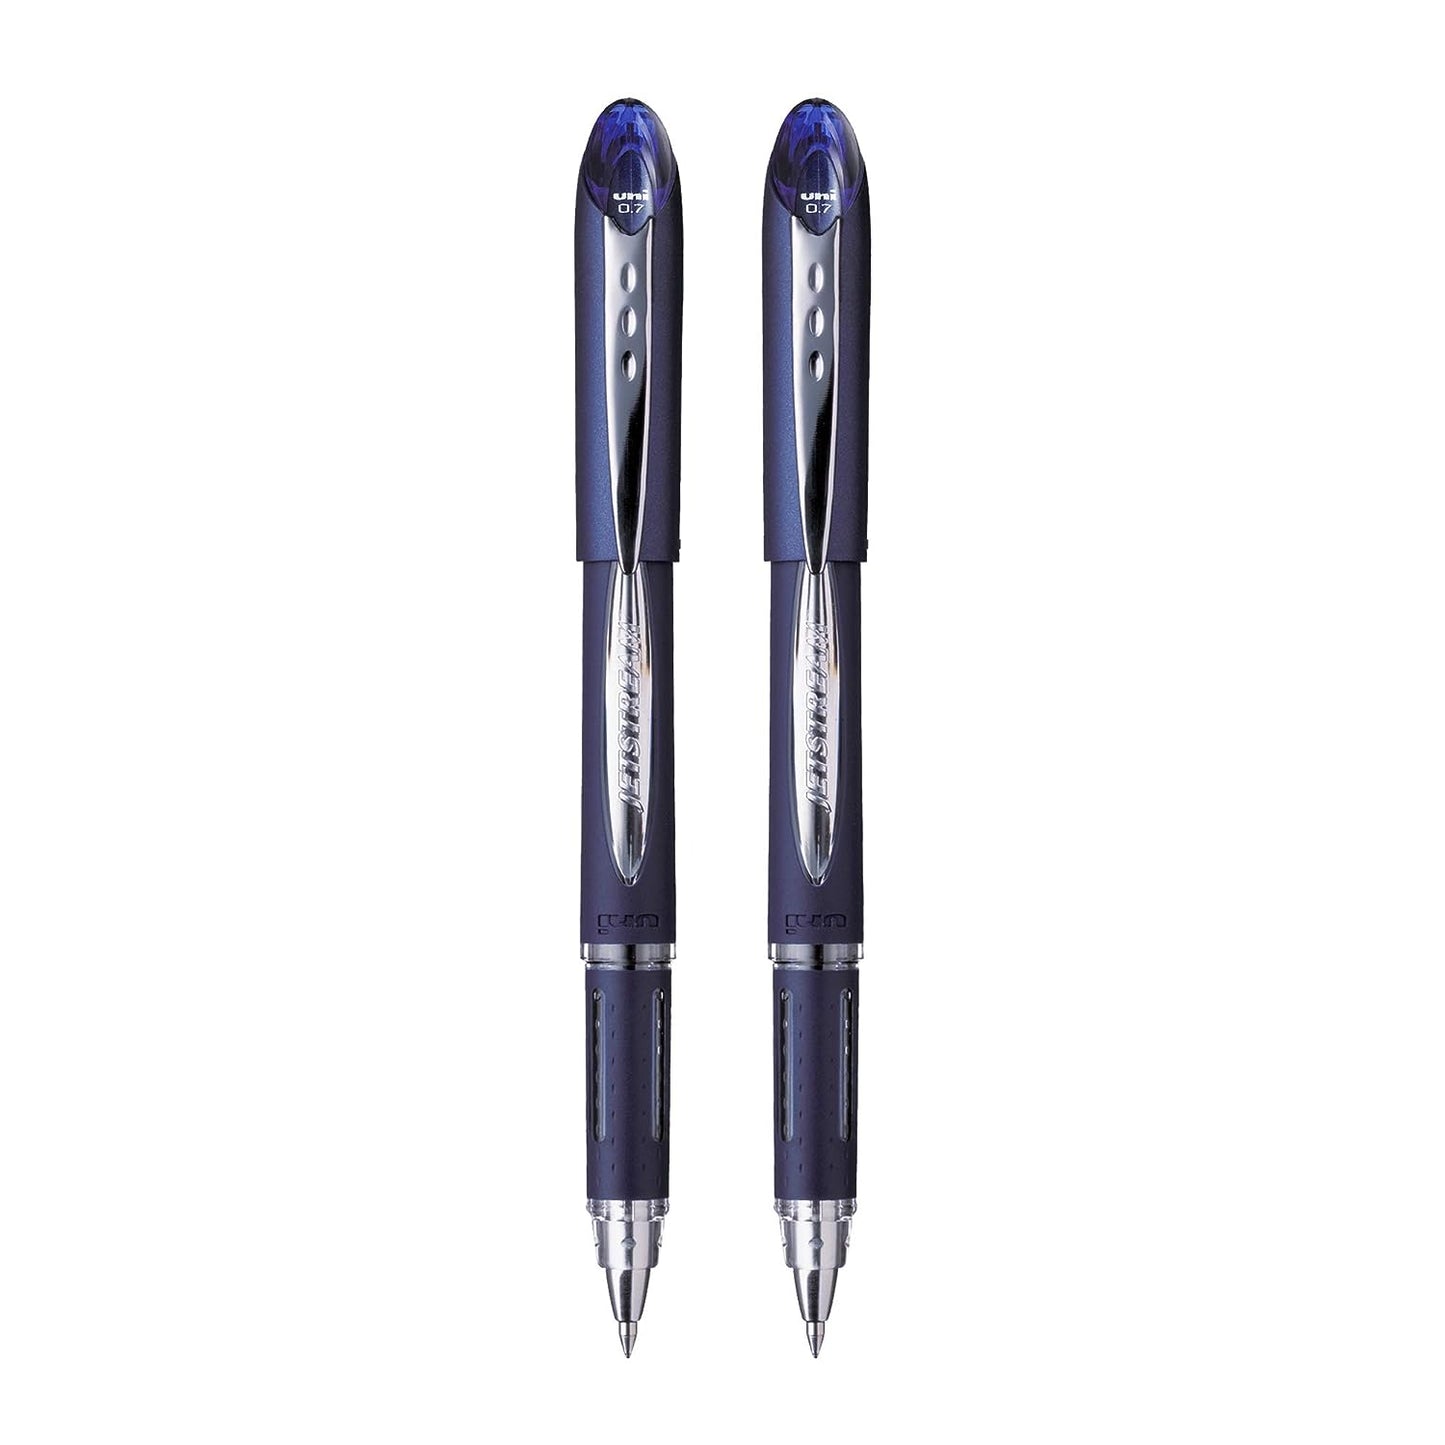 UniBall Jetstream Sx217 Roller Ball Pen - Blue Ink